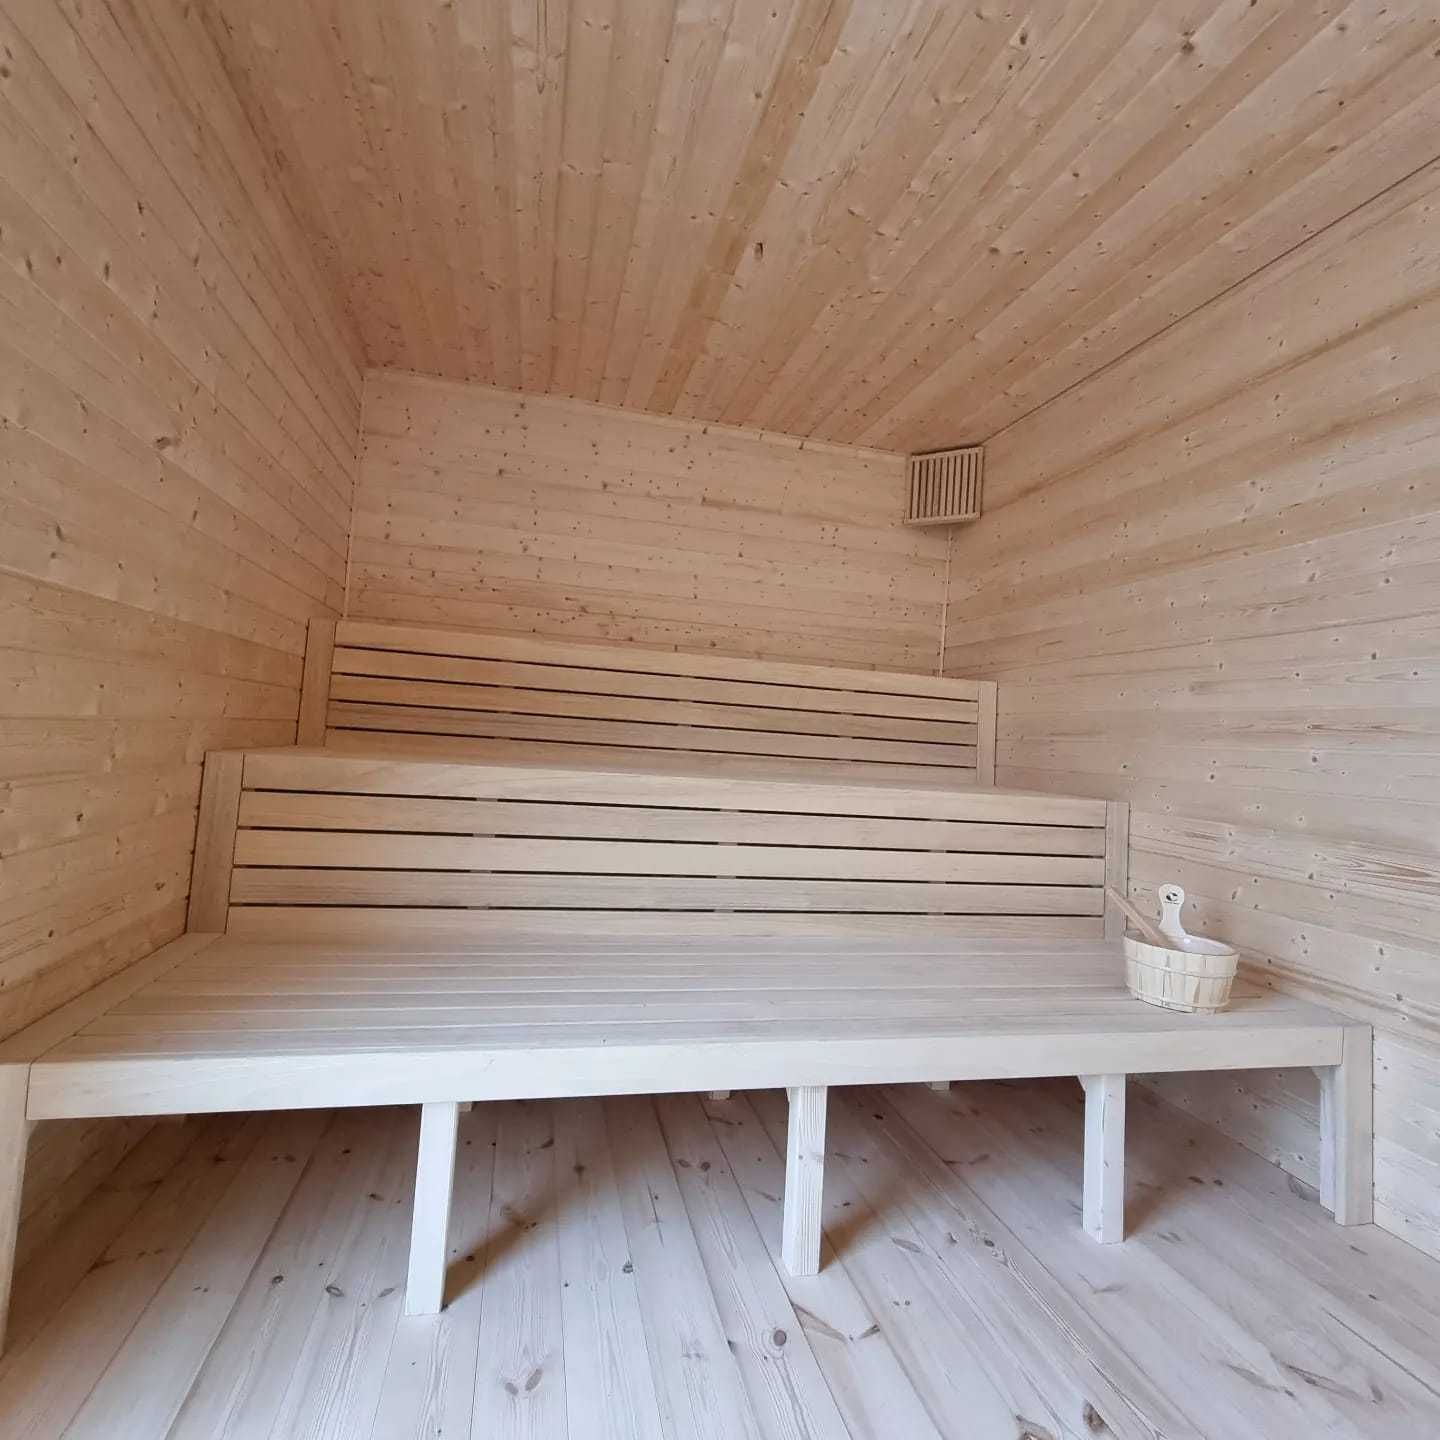 Duża sauna sucha 6x3 pomysł na biznes